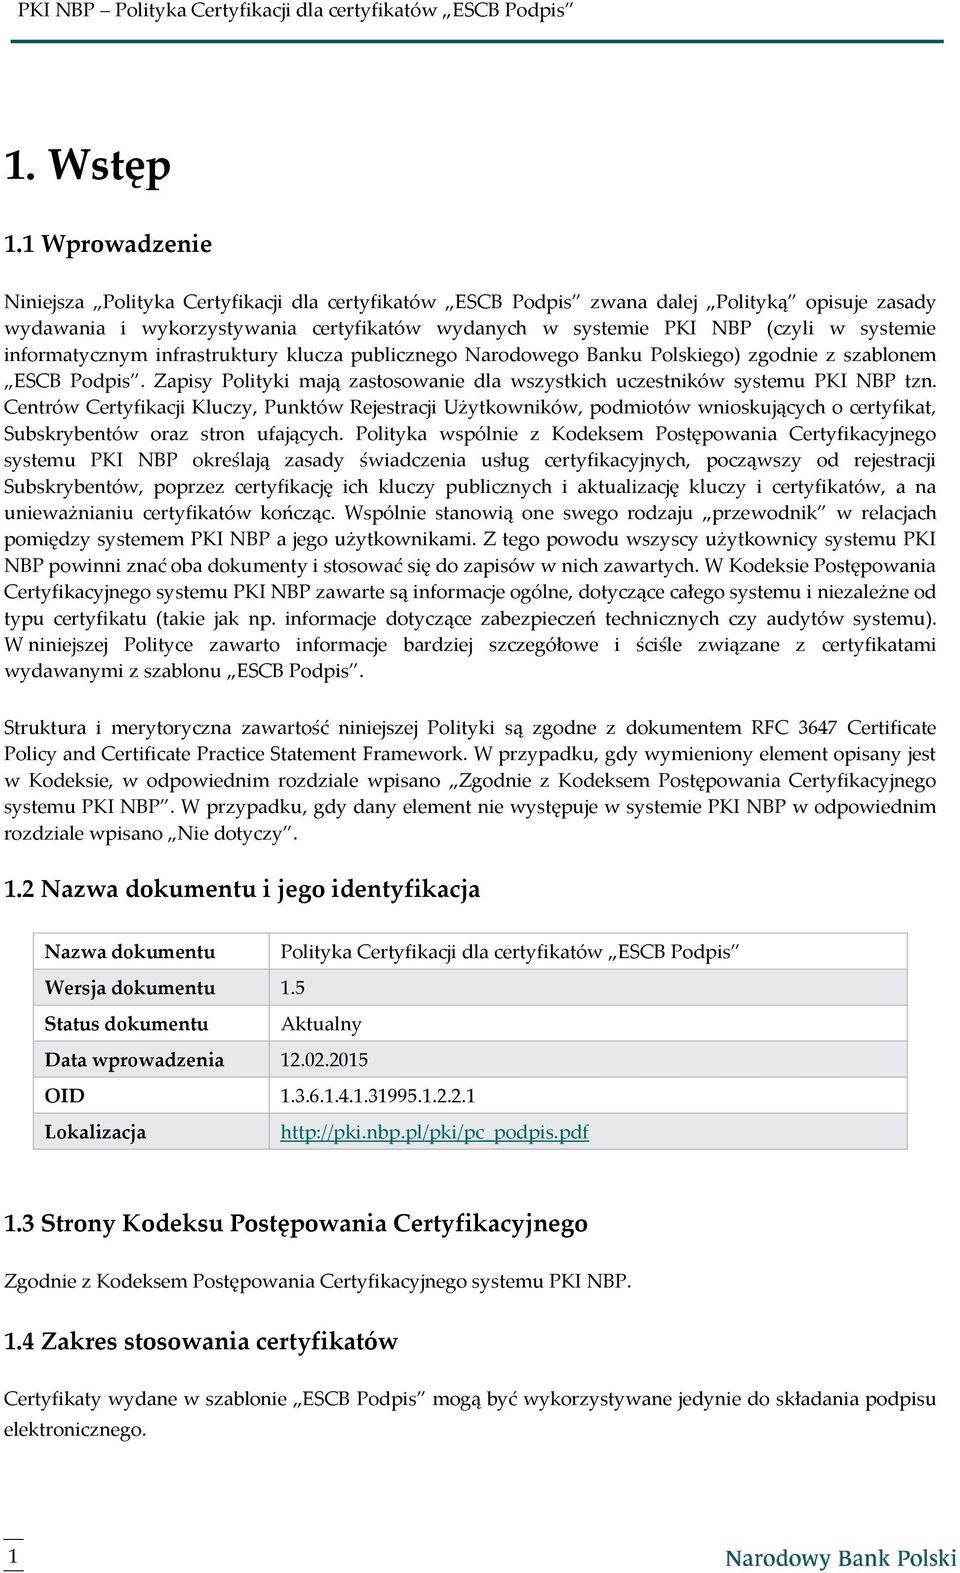 informatycznym infrastruktury klucza publicznego Narodowego Banku Polskiego) zgodnie z szablonem ESCB Podpis. Zapisy Polityki mają zastosowanie dla wszystkich uczestników systemu PKI NBP tzn.